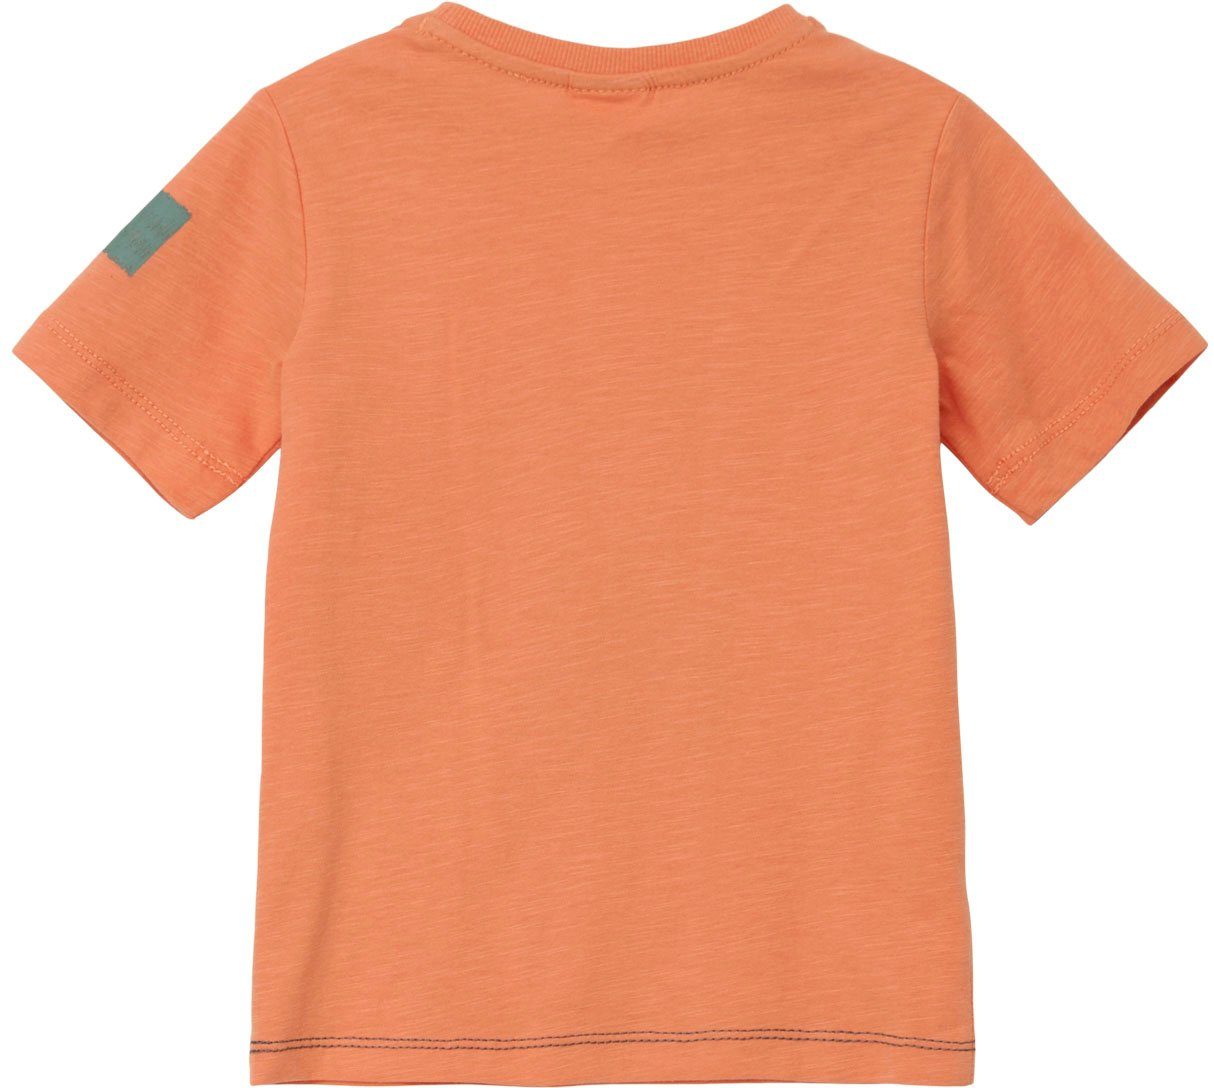 s.Oliver Arm Junior am orange T-Shirt Stickereien